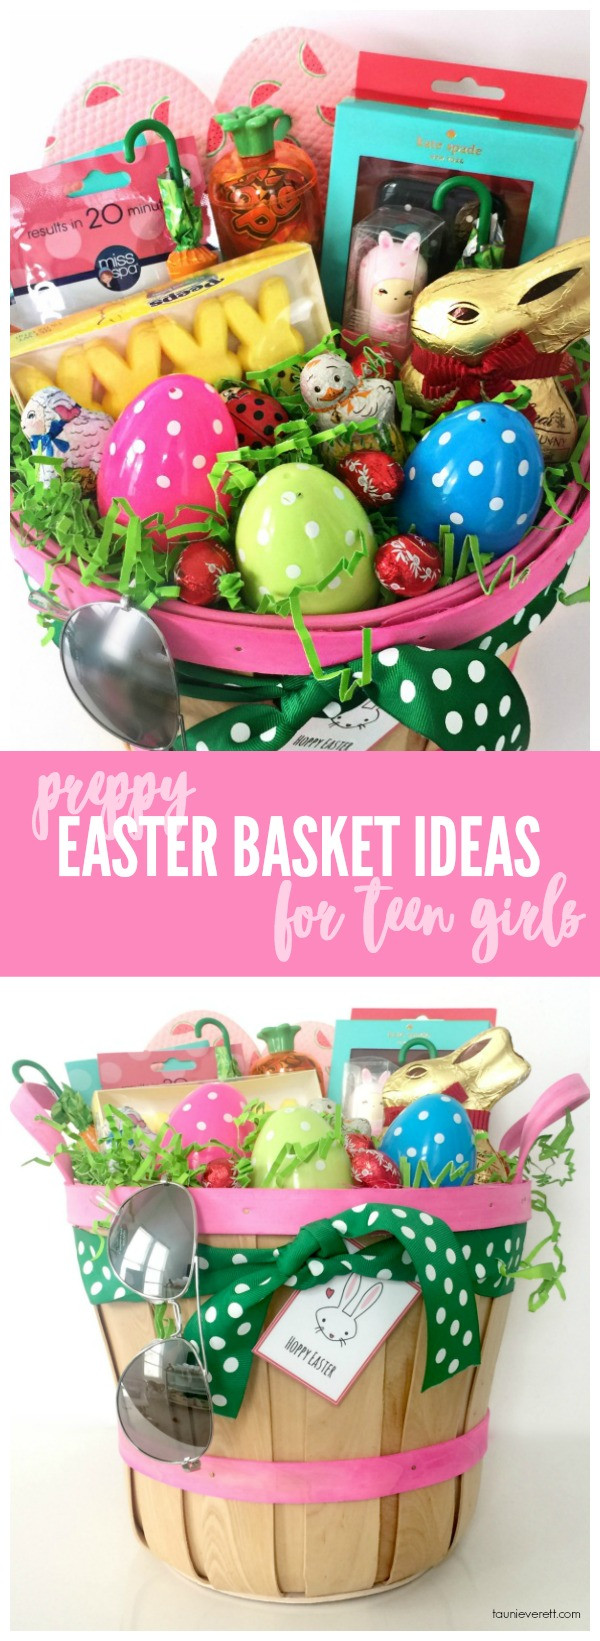 Easter Gift Ideas For Girls
 Preppy Easter Basket Ideas for Teen Girls